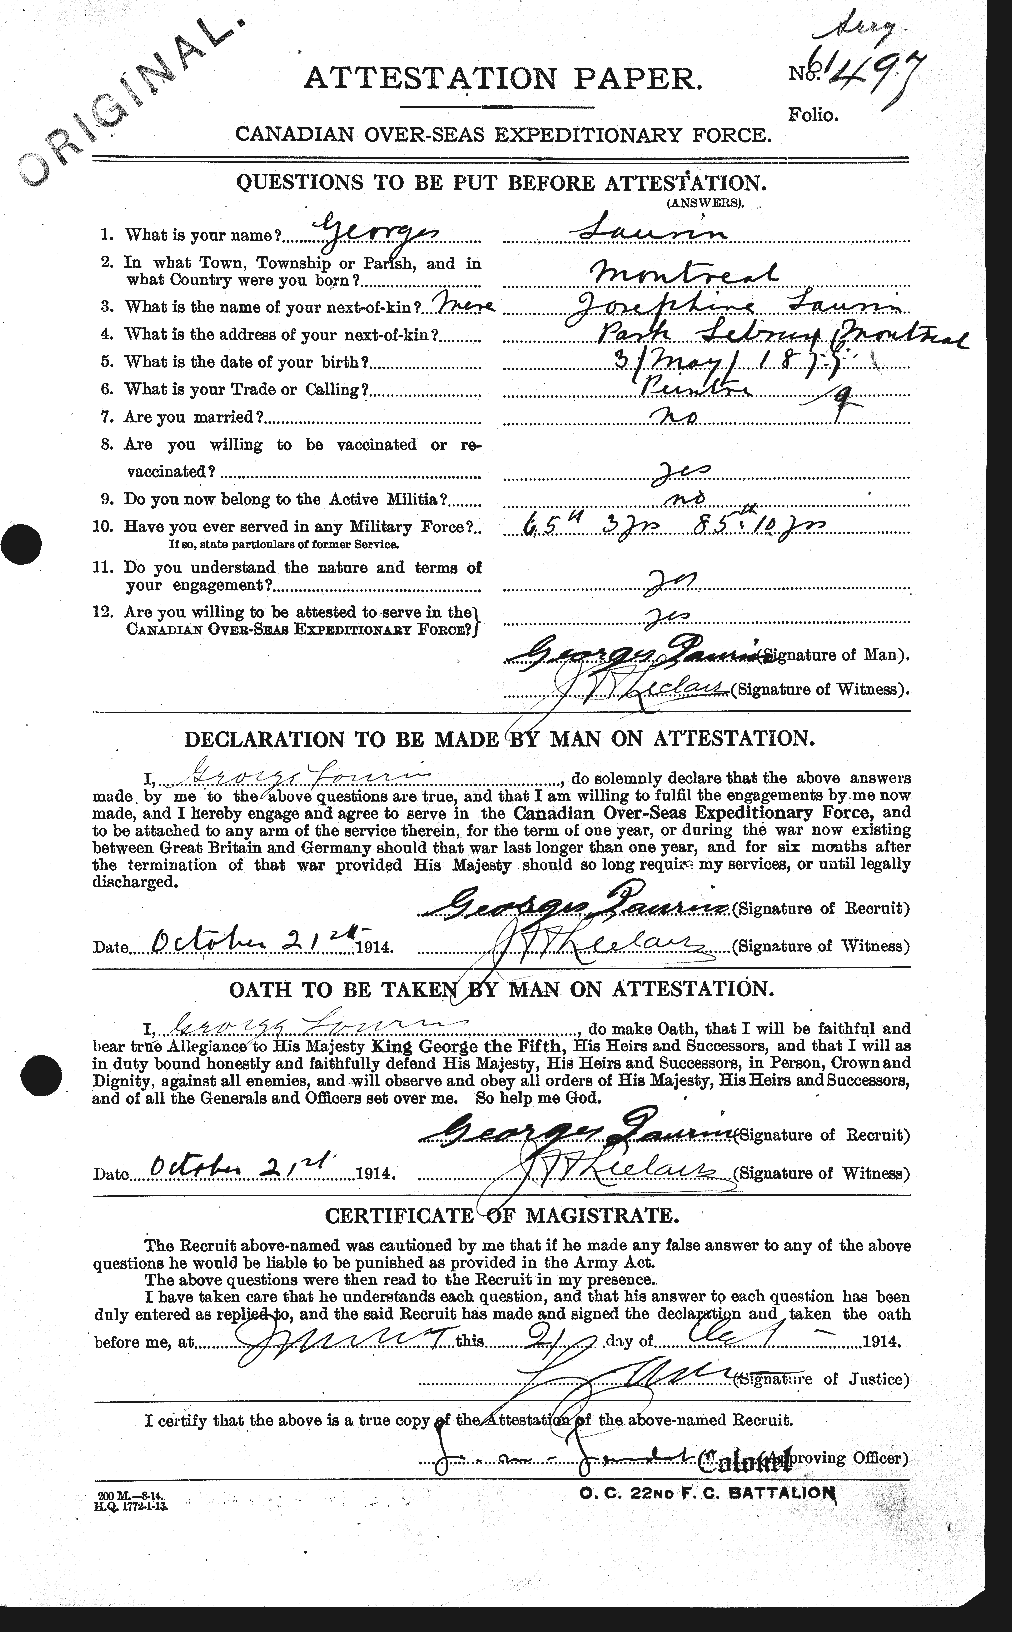 Dossiers du Personnel de la Première Guerre mondiale - CEC 452971a